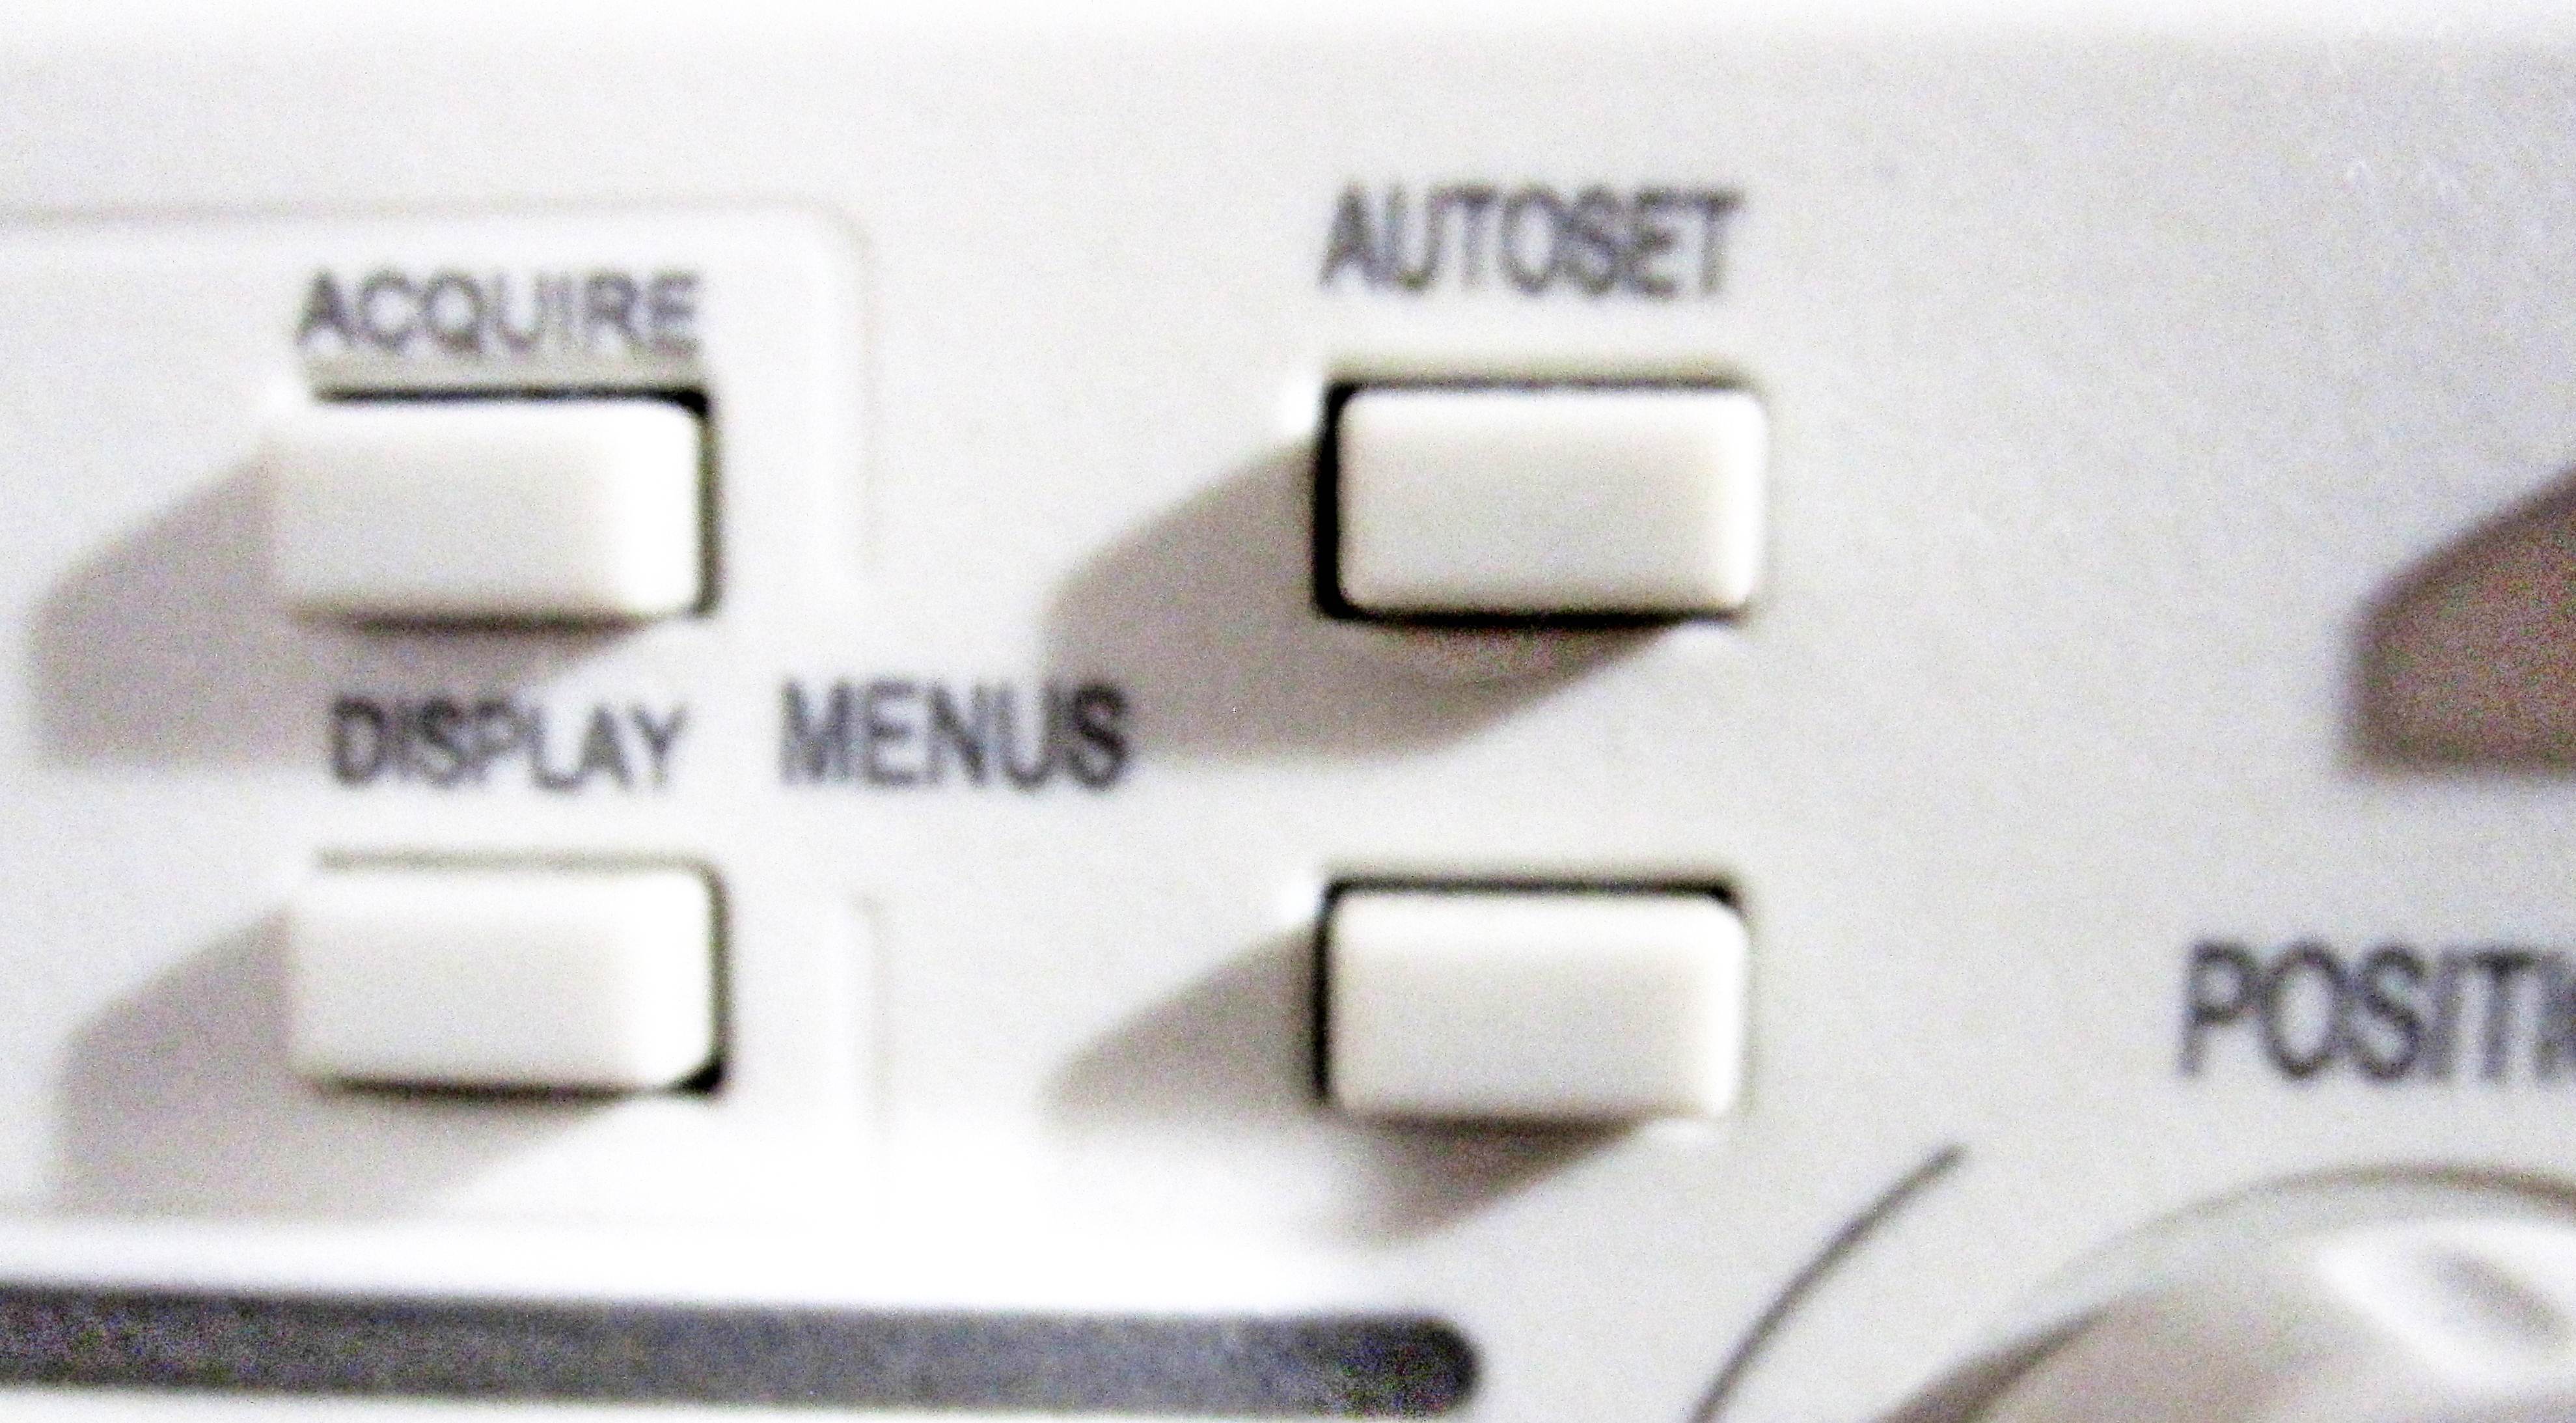 Autoset Button on Oscilloscope